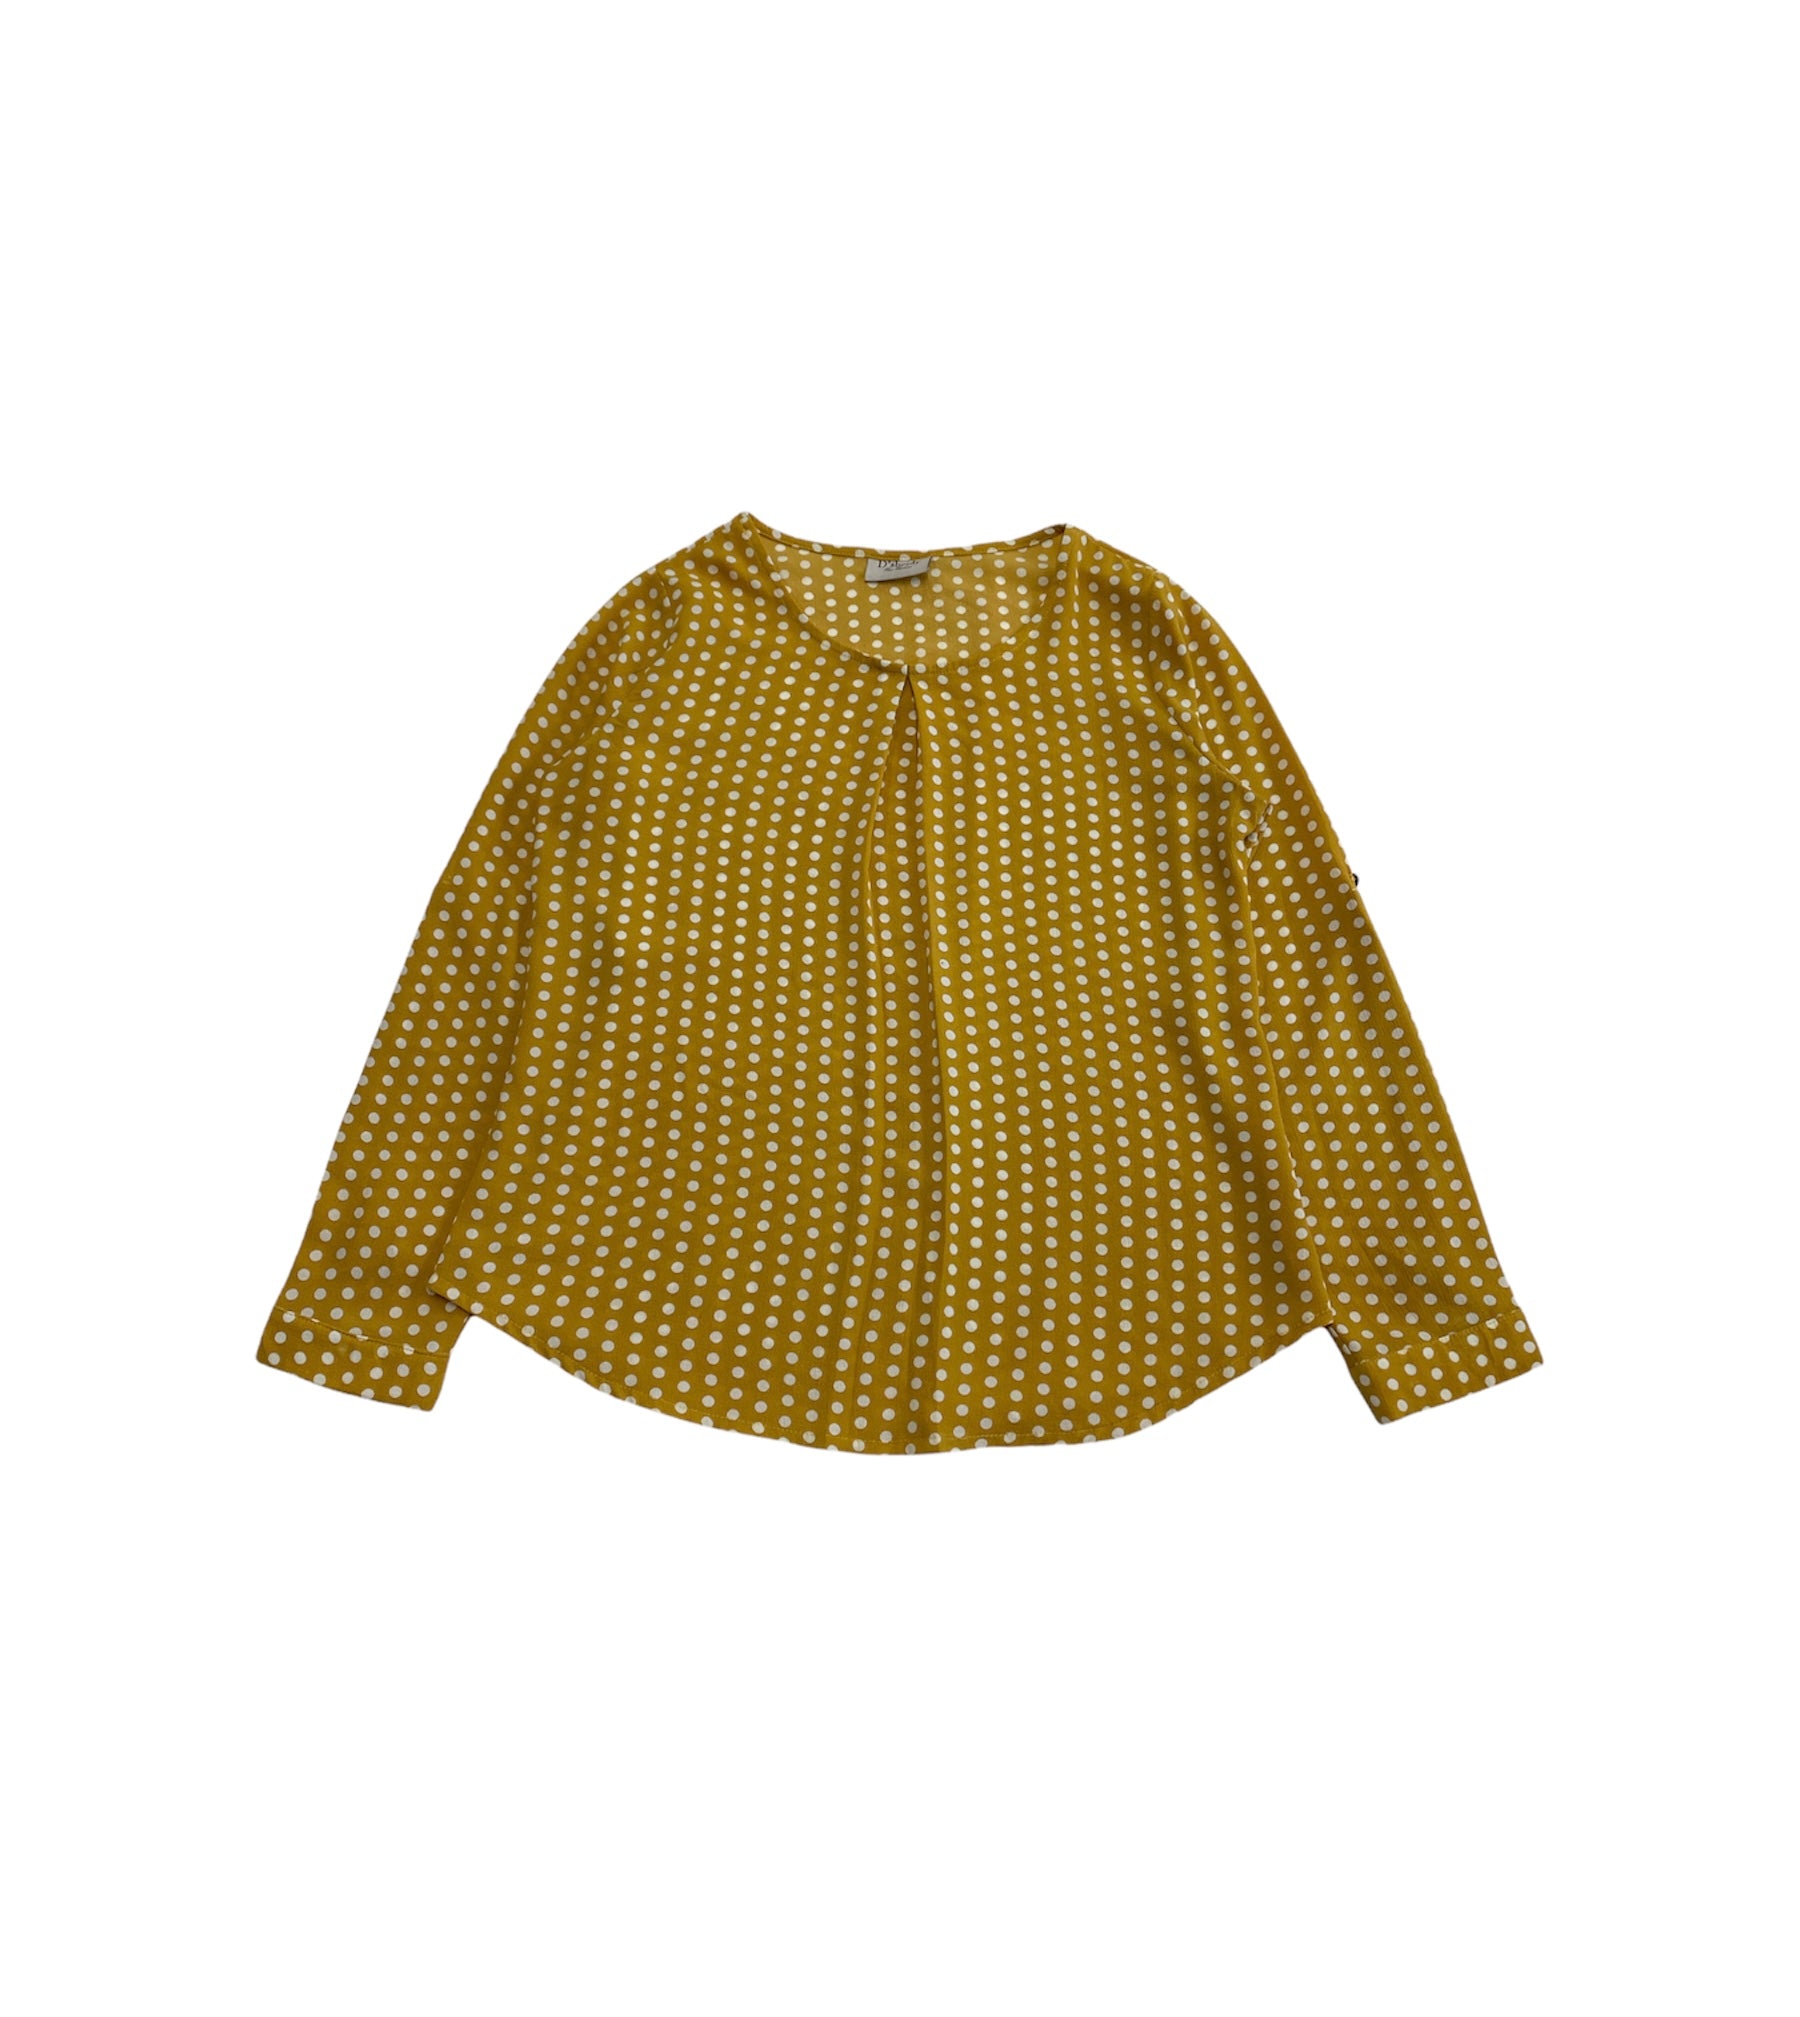 D'SBEIDY - Blusa Con Estampado De Polka Dots Color Amarillo Y Blanc